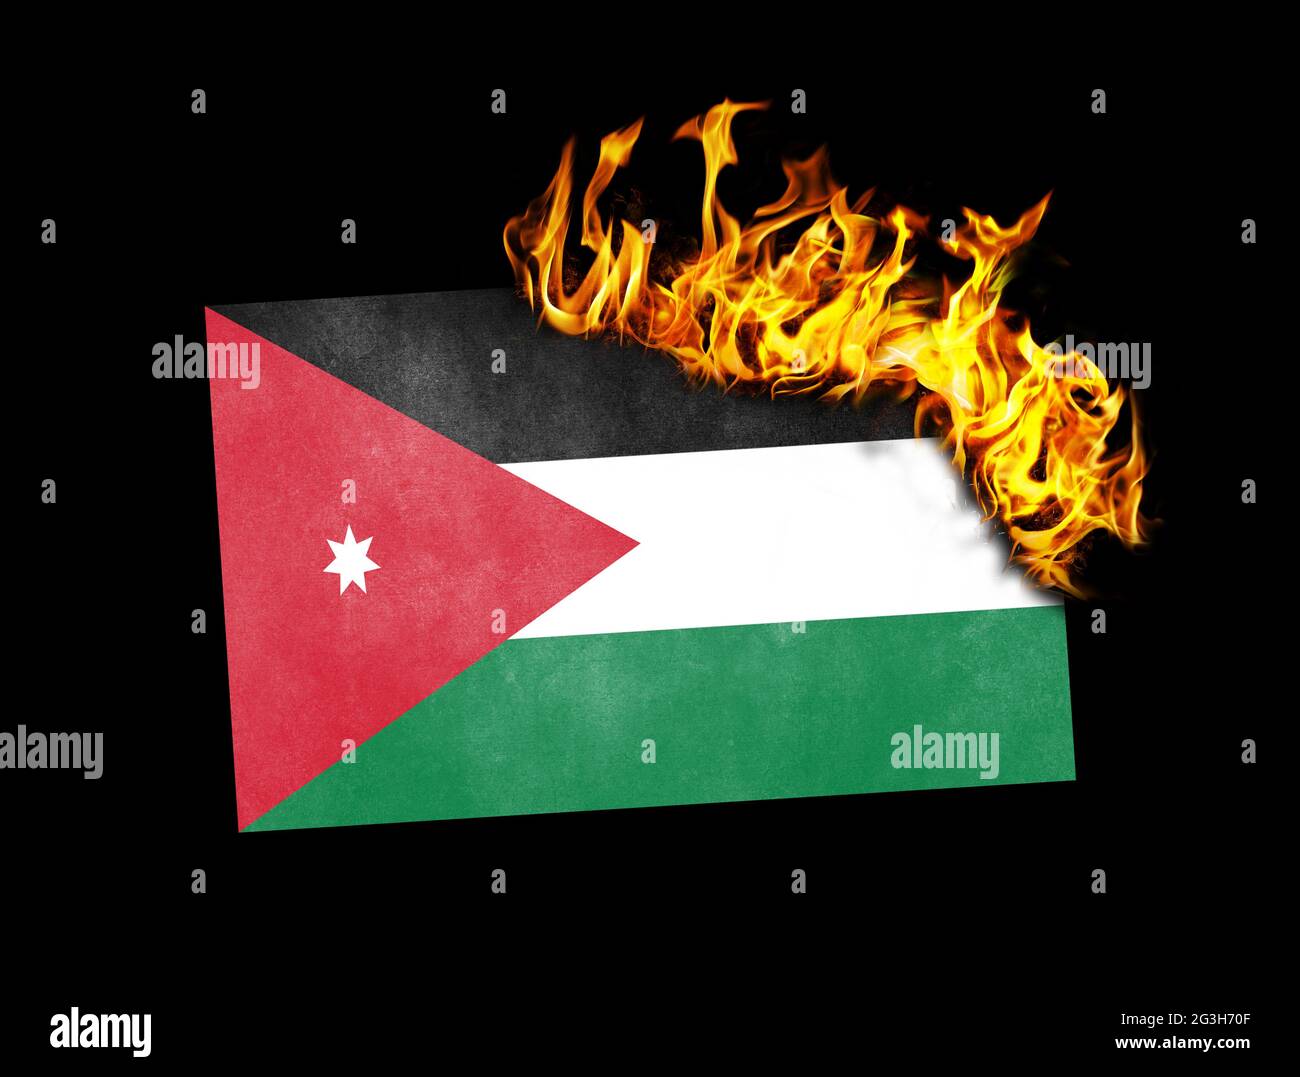 Flag burning - Jordan Stock Photo